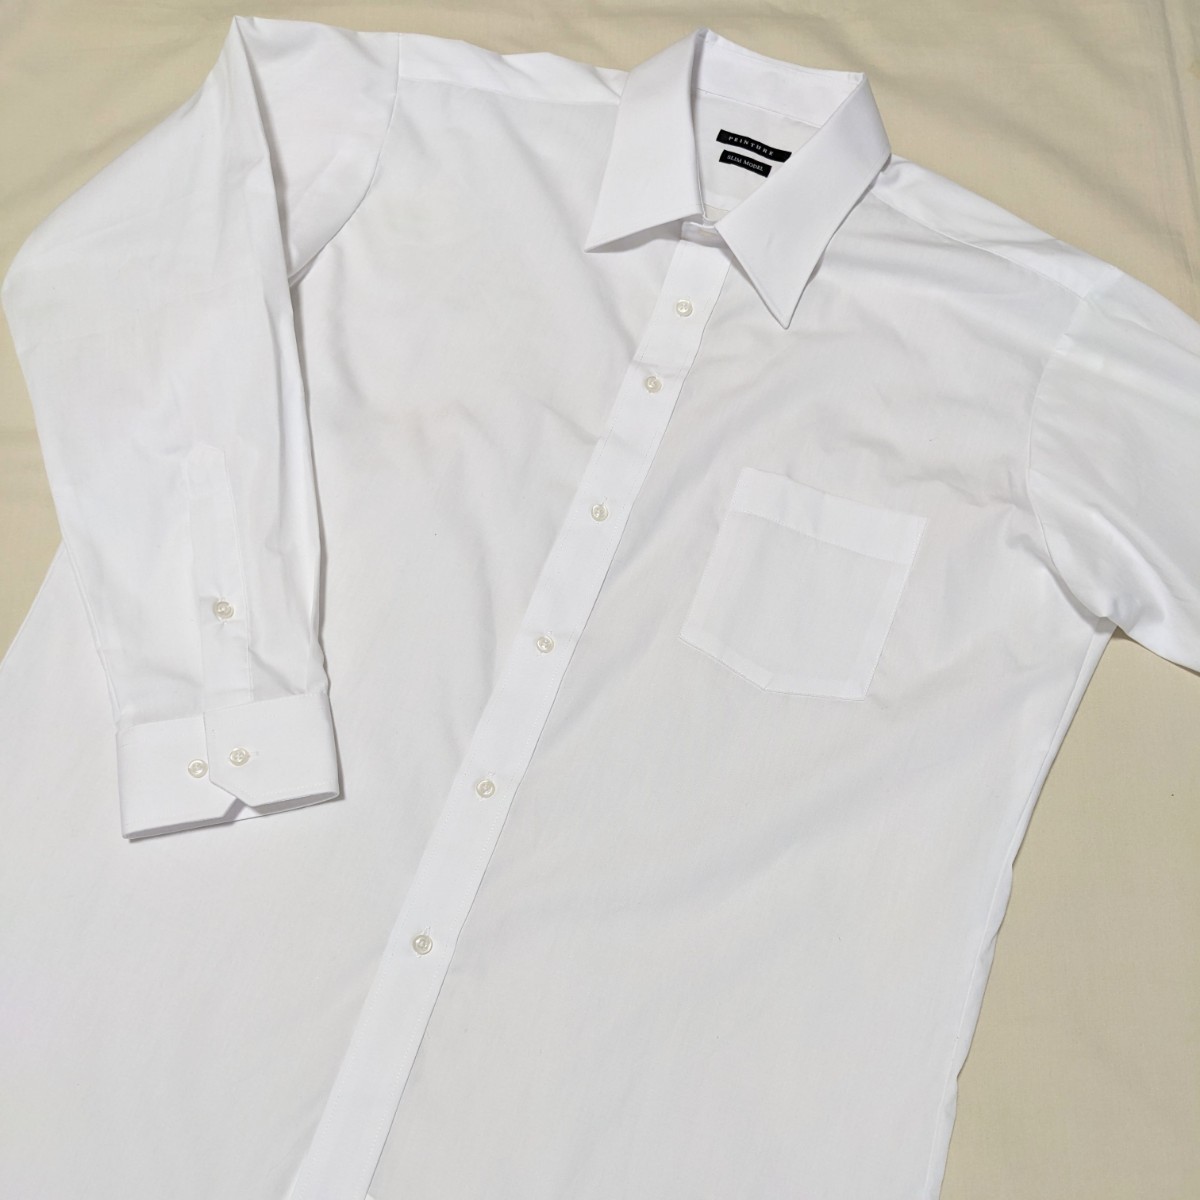 +FY37 メンズ フォーマル 44 3L 長袖 ワイシャツ ドレスシャツ 6点 セット 白 ブルー ビジネス セレモニー 大きいサイズ_画像6